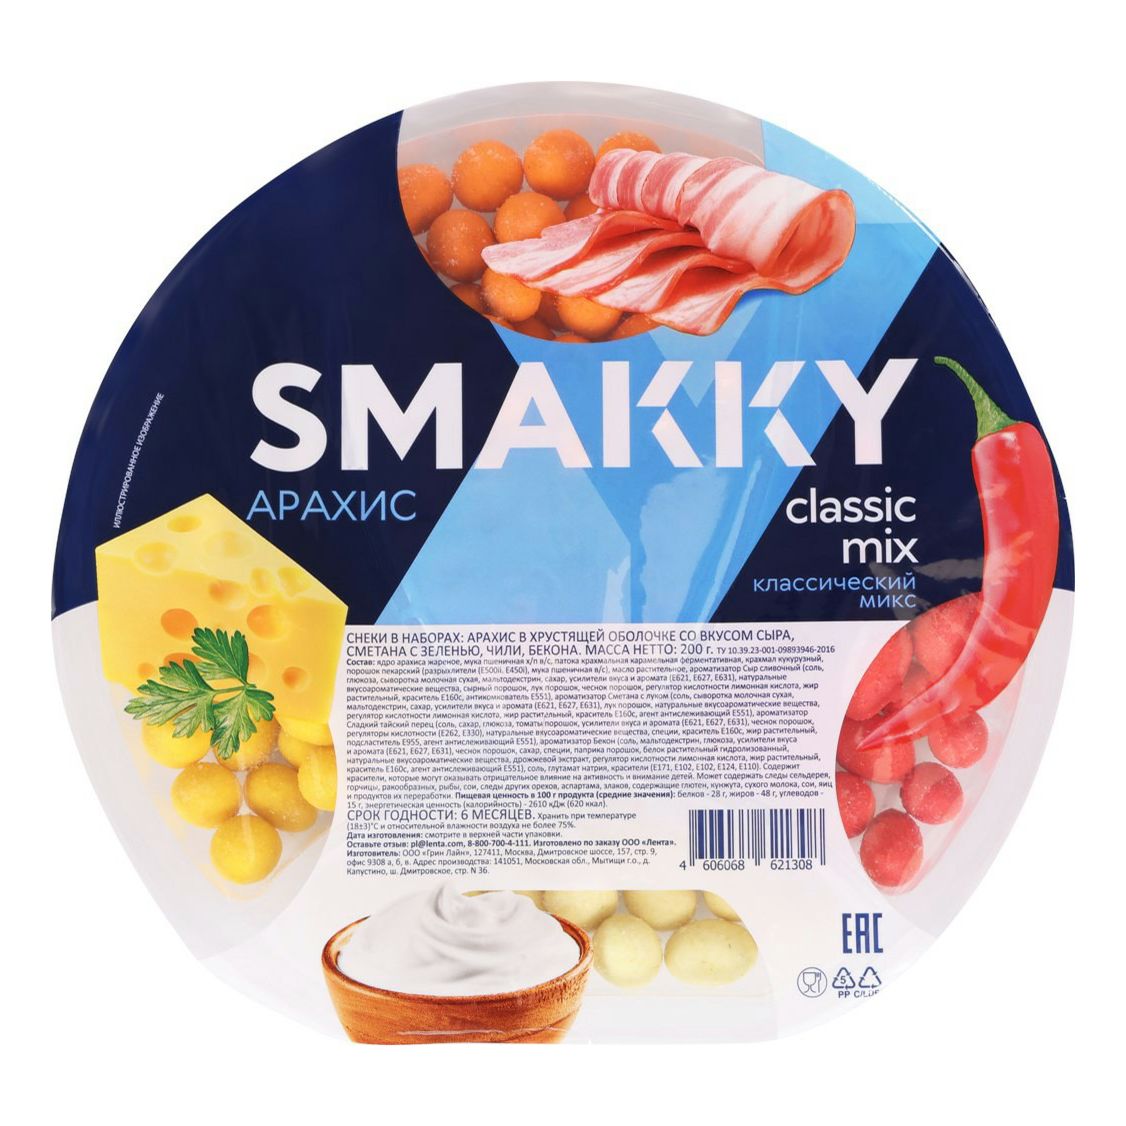 Арахис Smakky Classic mix жареный очищенный 200 г